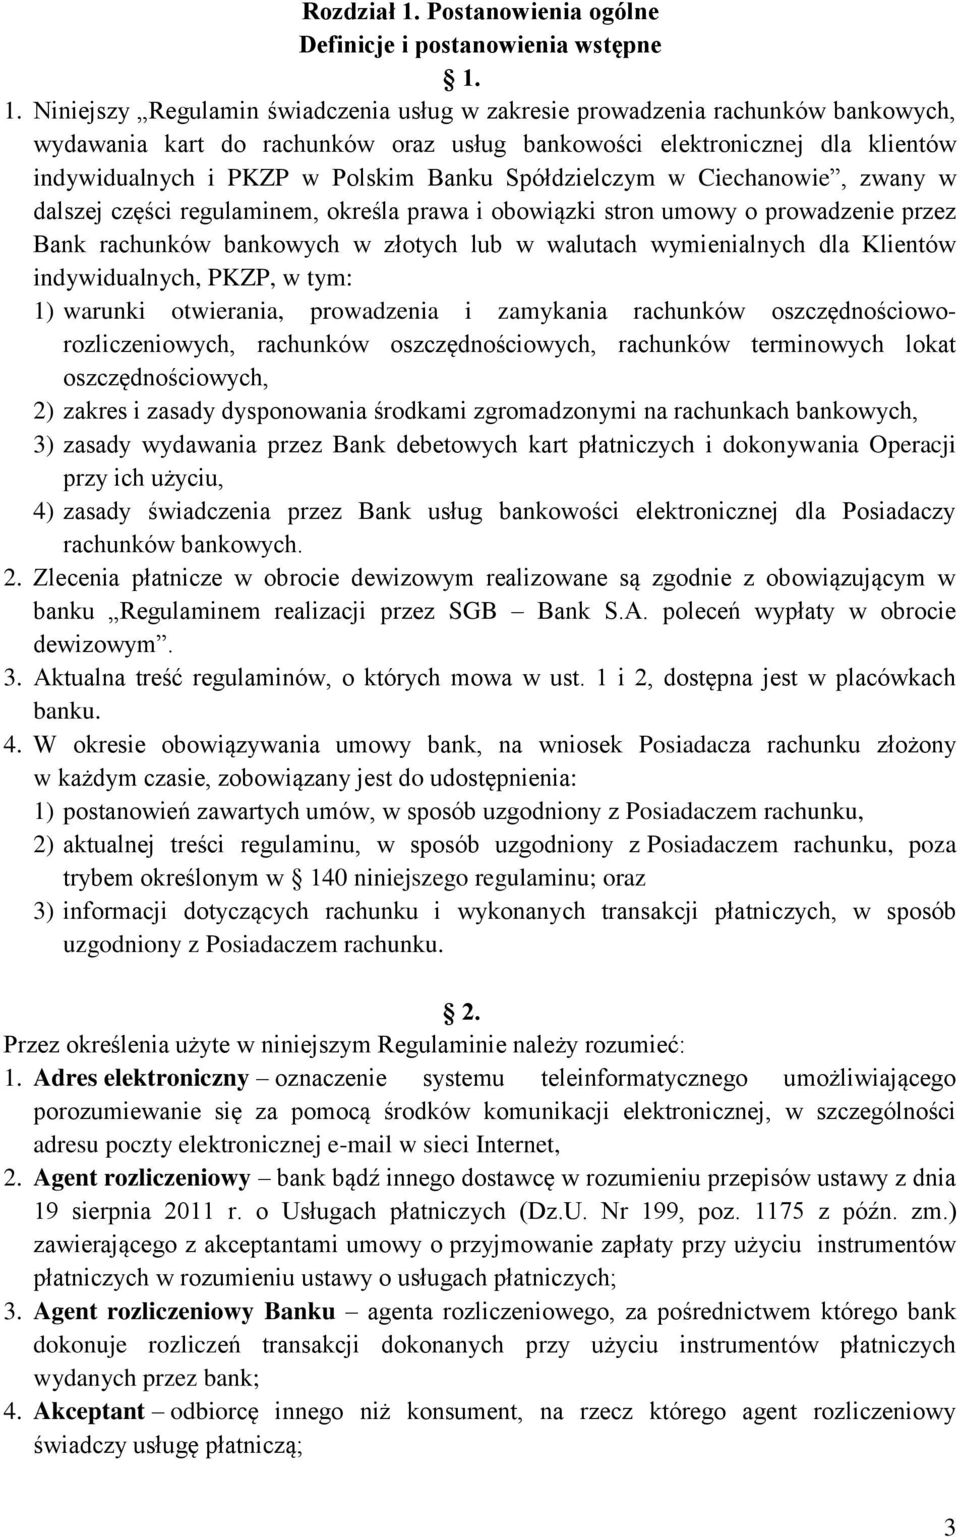 1. Niniejszy Regulamin świadczenia usług w zakresie prowadzenia rachunków bankowych, wydawania kart do rachunków oraz usług bankowości elektronicznej dla klientów indywidualnych i PKZP w Polskim